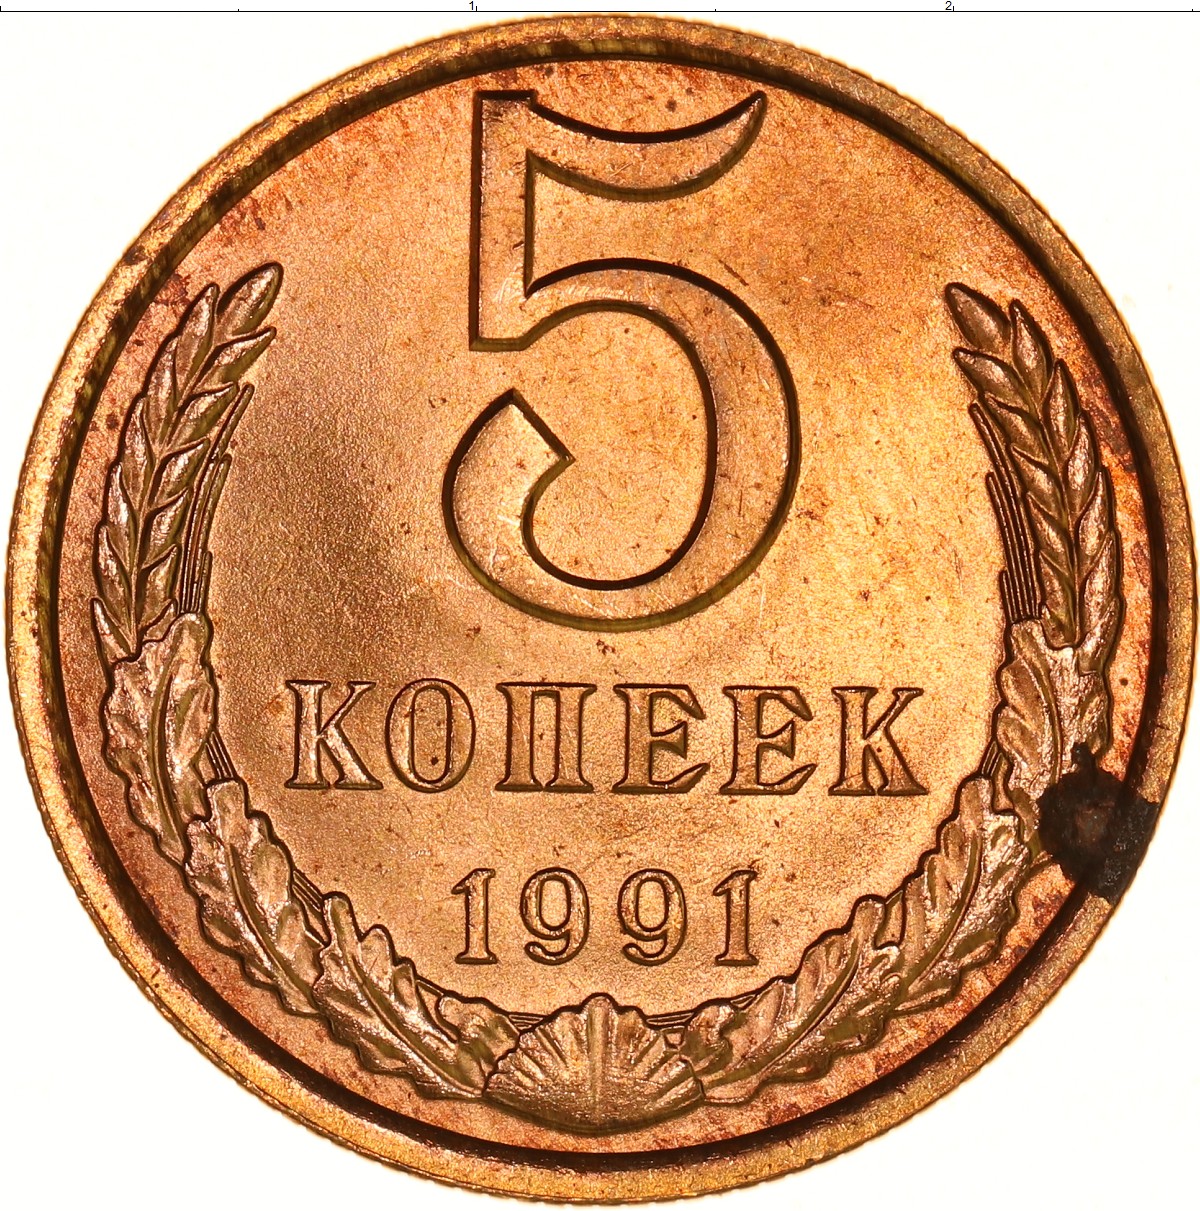 75 рублей 8